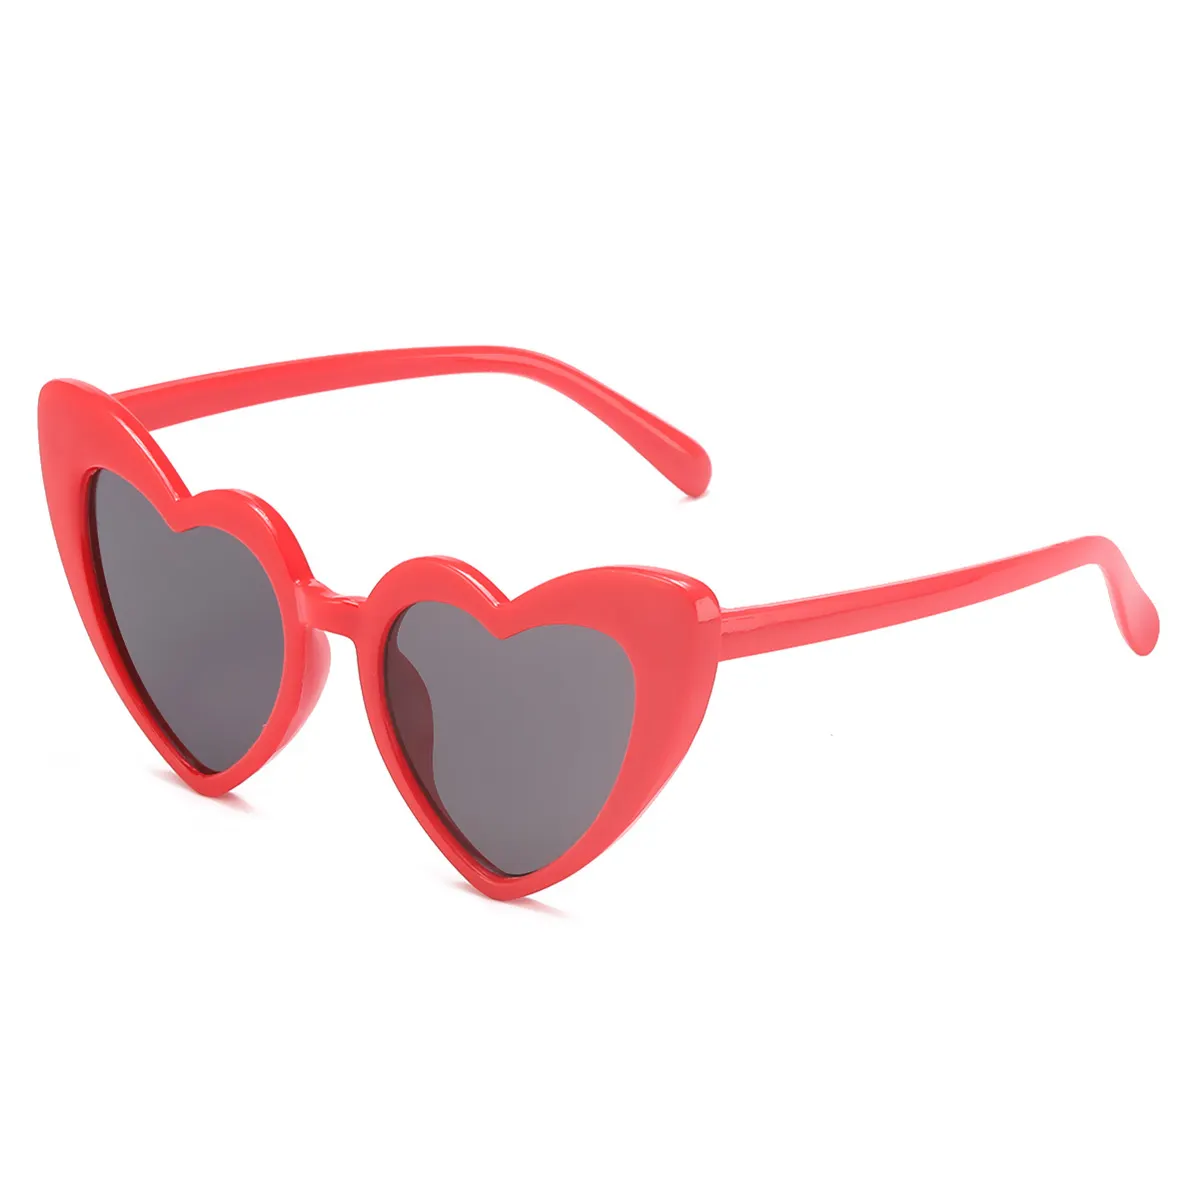 Gafas de sol con forma de corazón para niños y niñas, lentes de sol infantiles en forma de corazón de melocotón